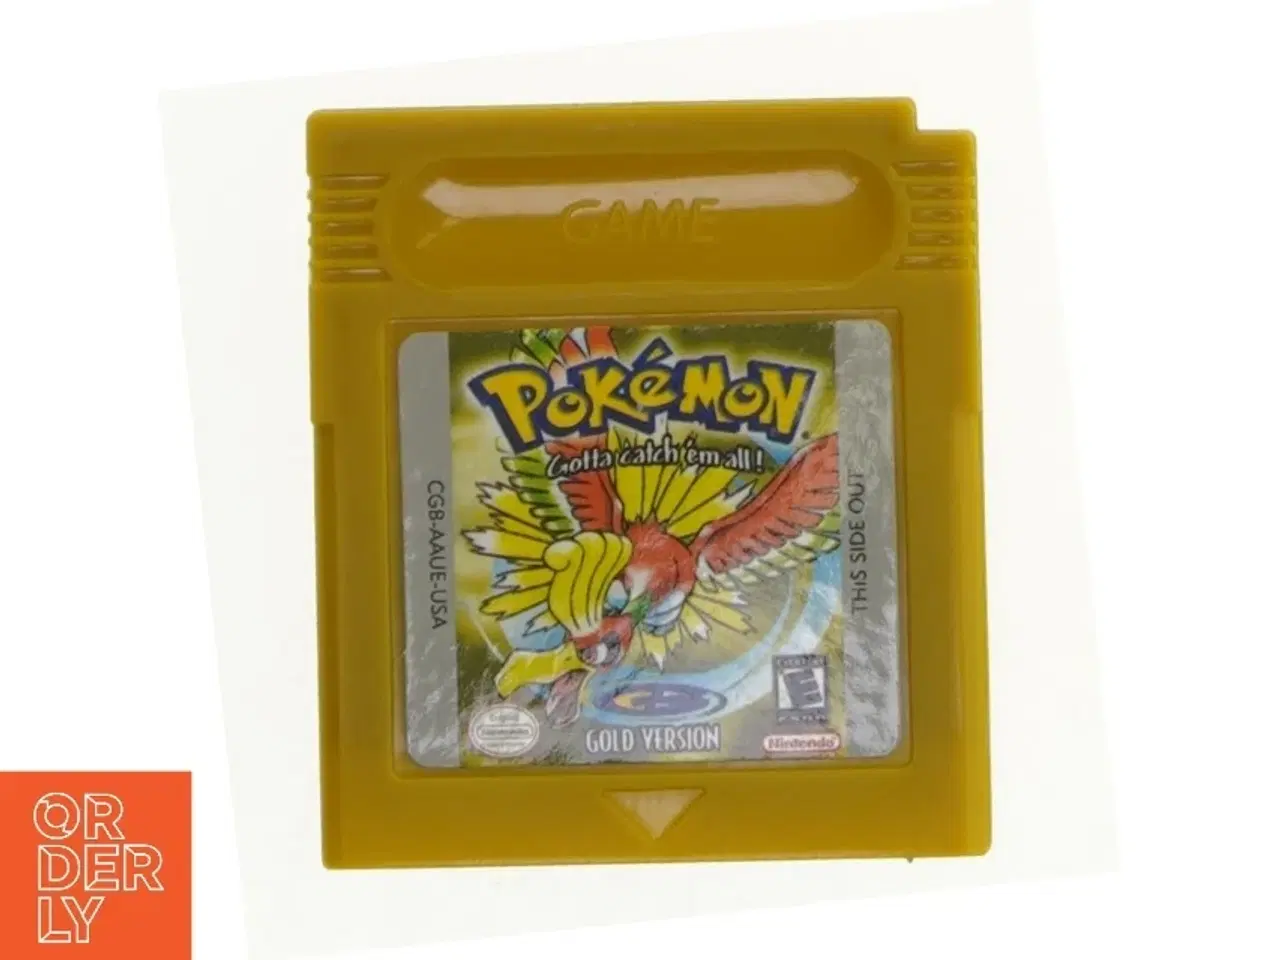 Billede 1 - Gameboy spil Pokemon gold version fra Nintendo (str. Sx cm)